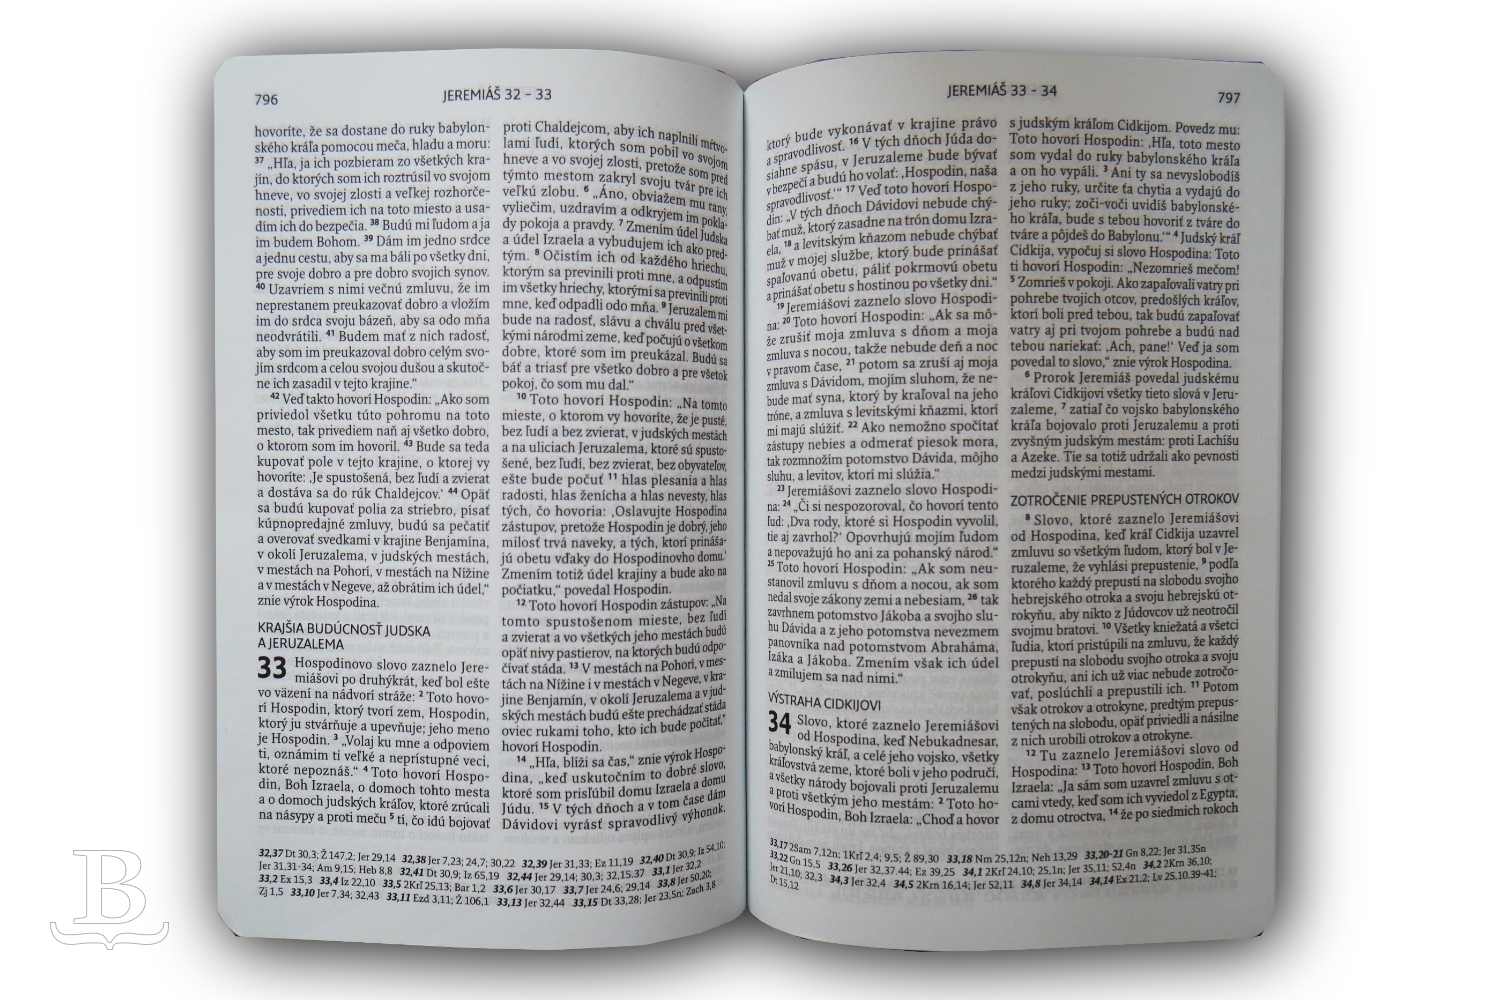 Biblia slovenská, ekumenický preklad, štandardný formát, koža, 2018